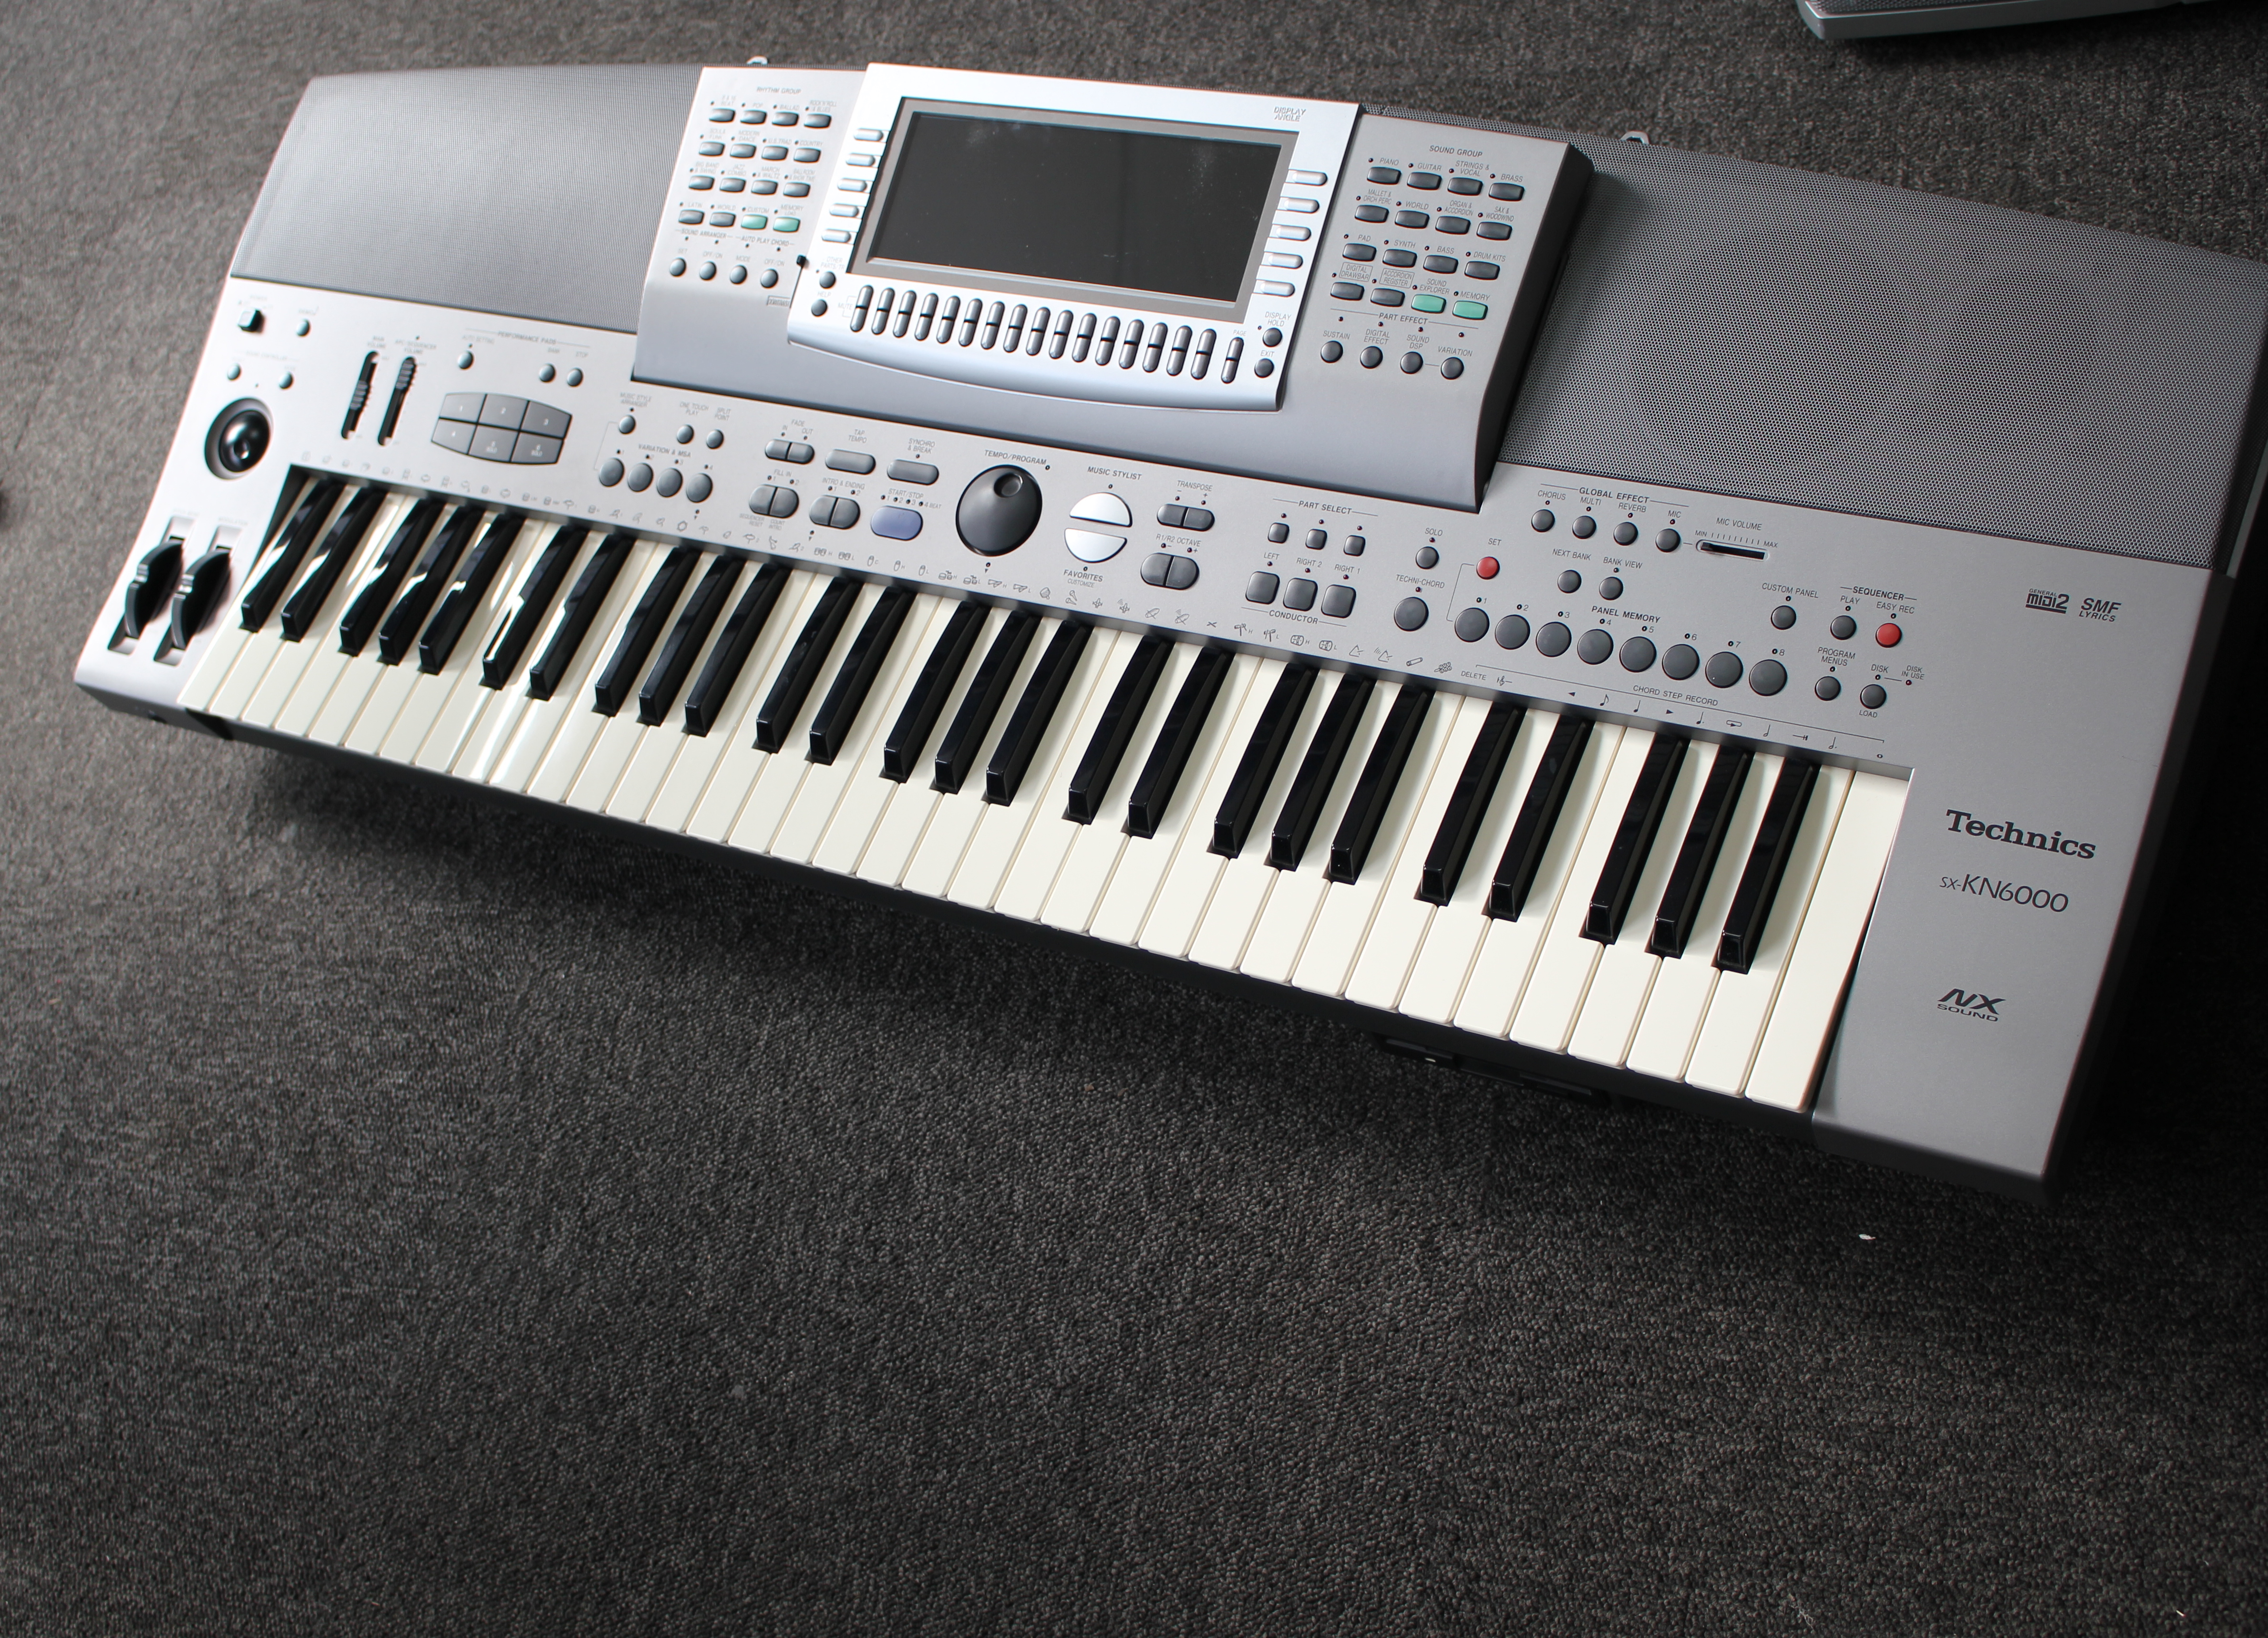 Any Technics Kn6000 Keyboard Style S